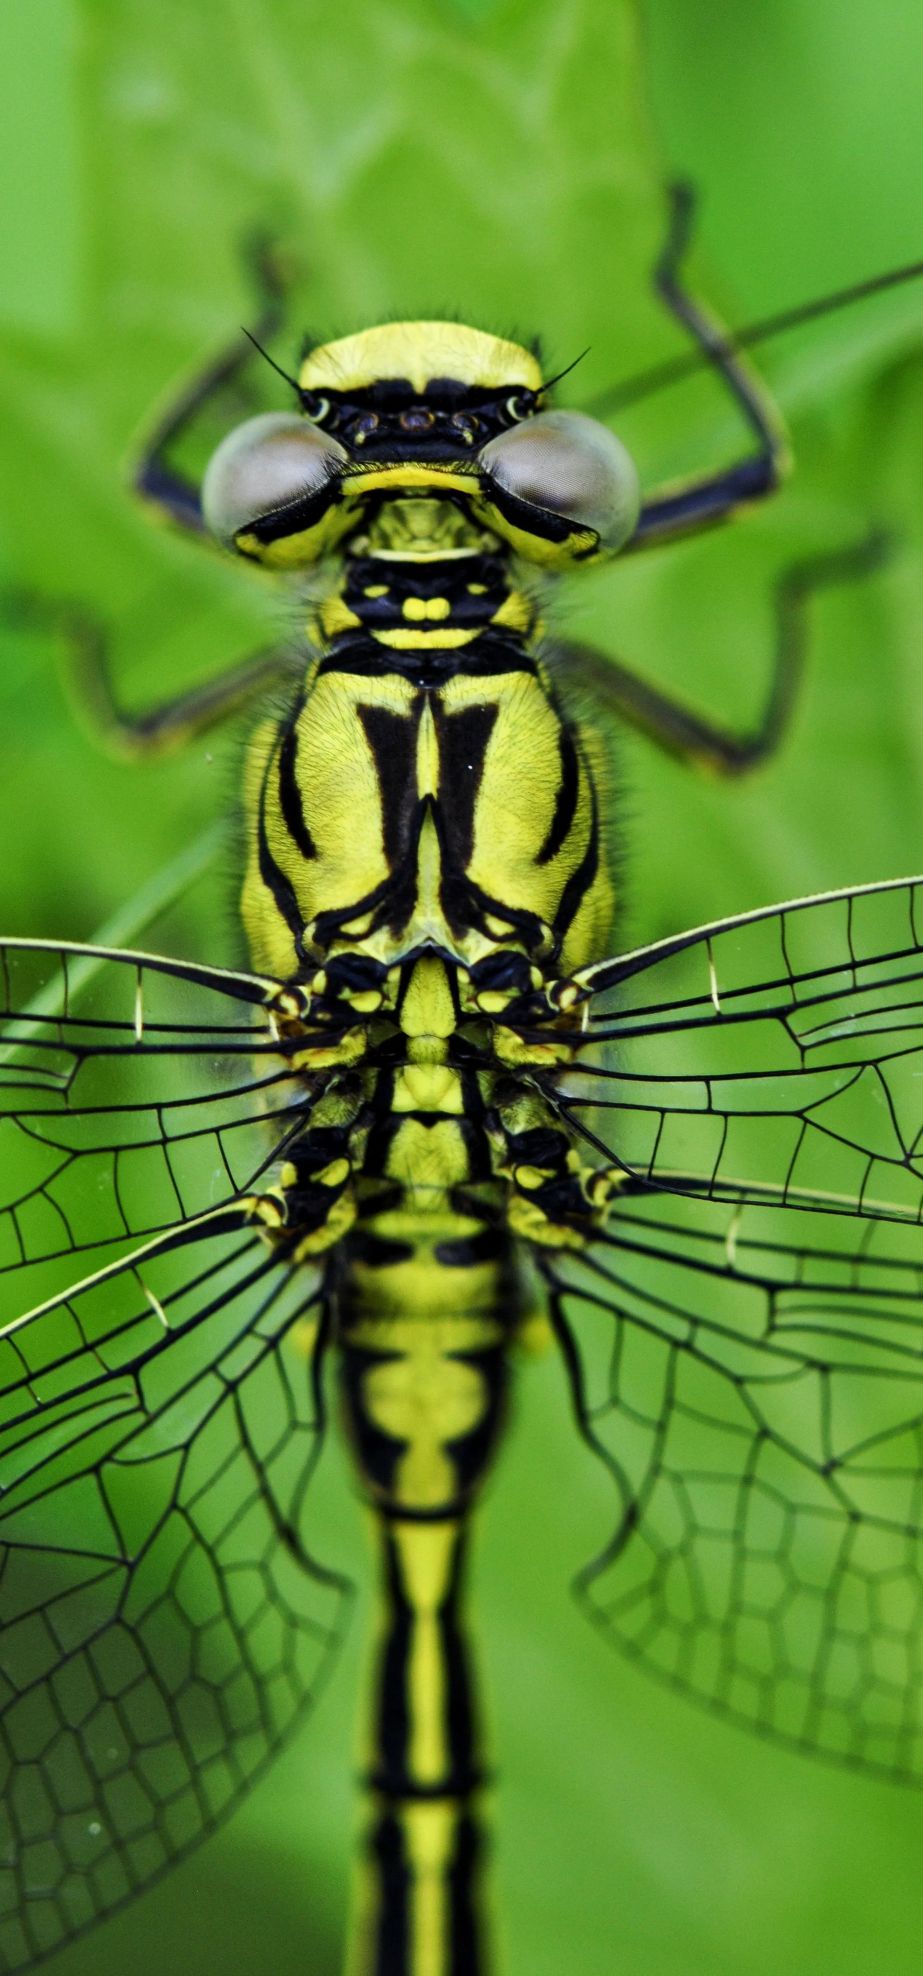 神奇昆虫的秘密世界：微距下的昆虫摄影艺术